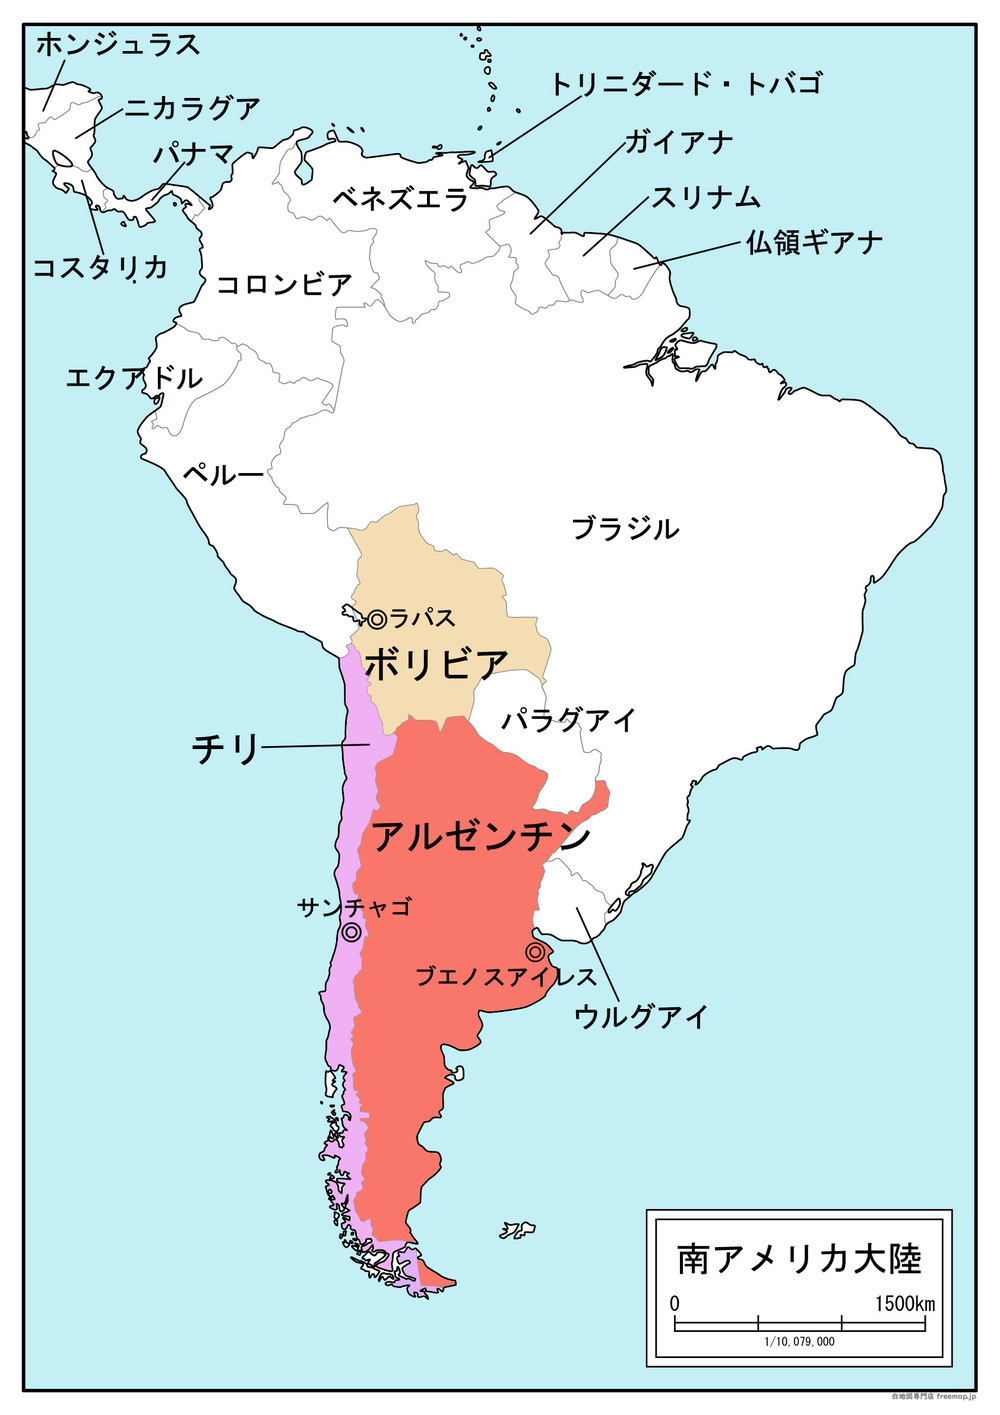 南米とのさらなる関係深化を目指して――チリ、アルゼンチン、ボリビア ...